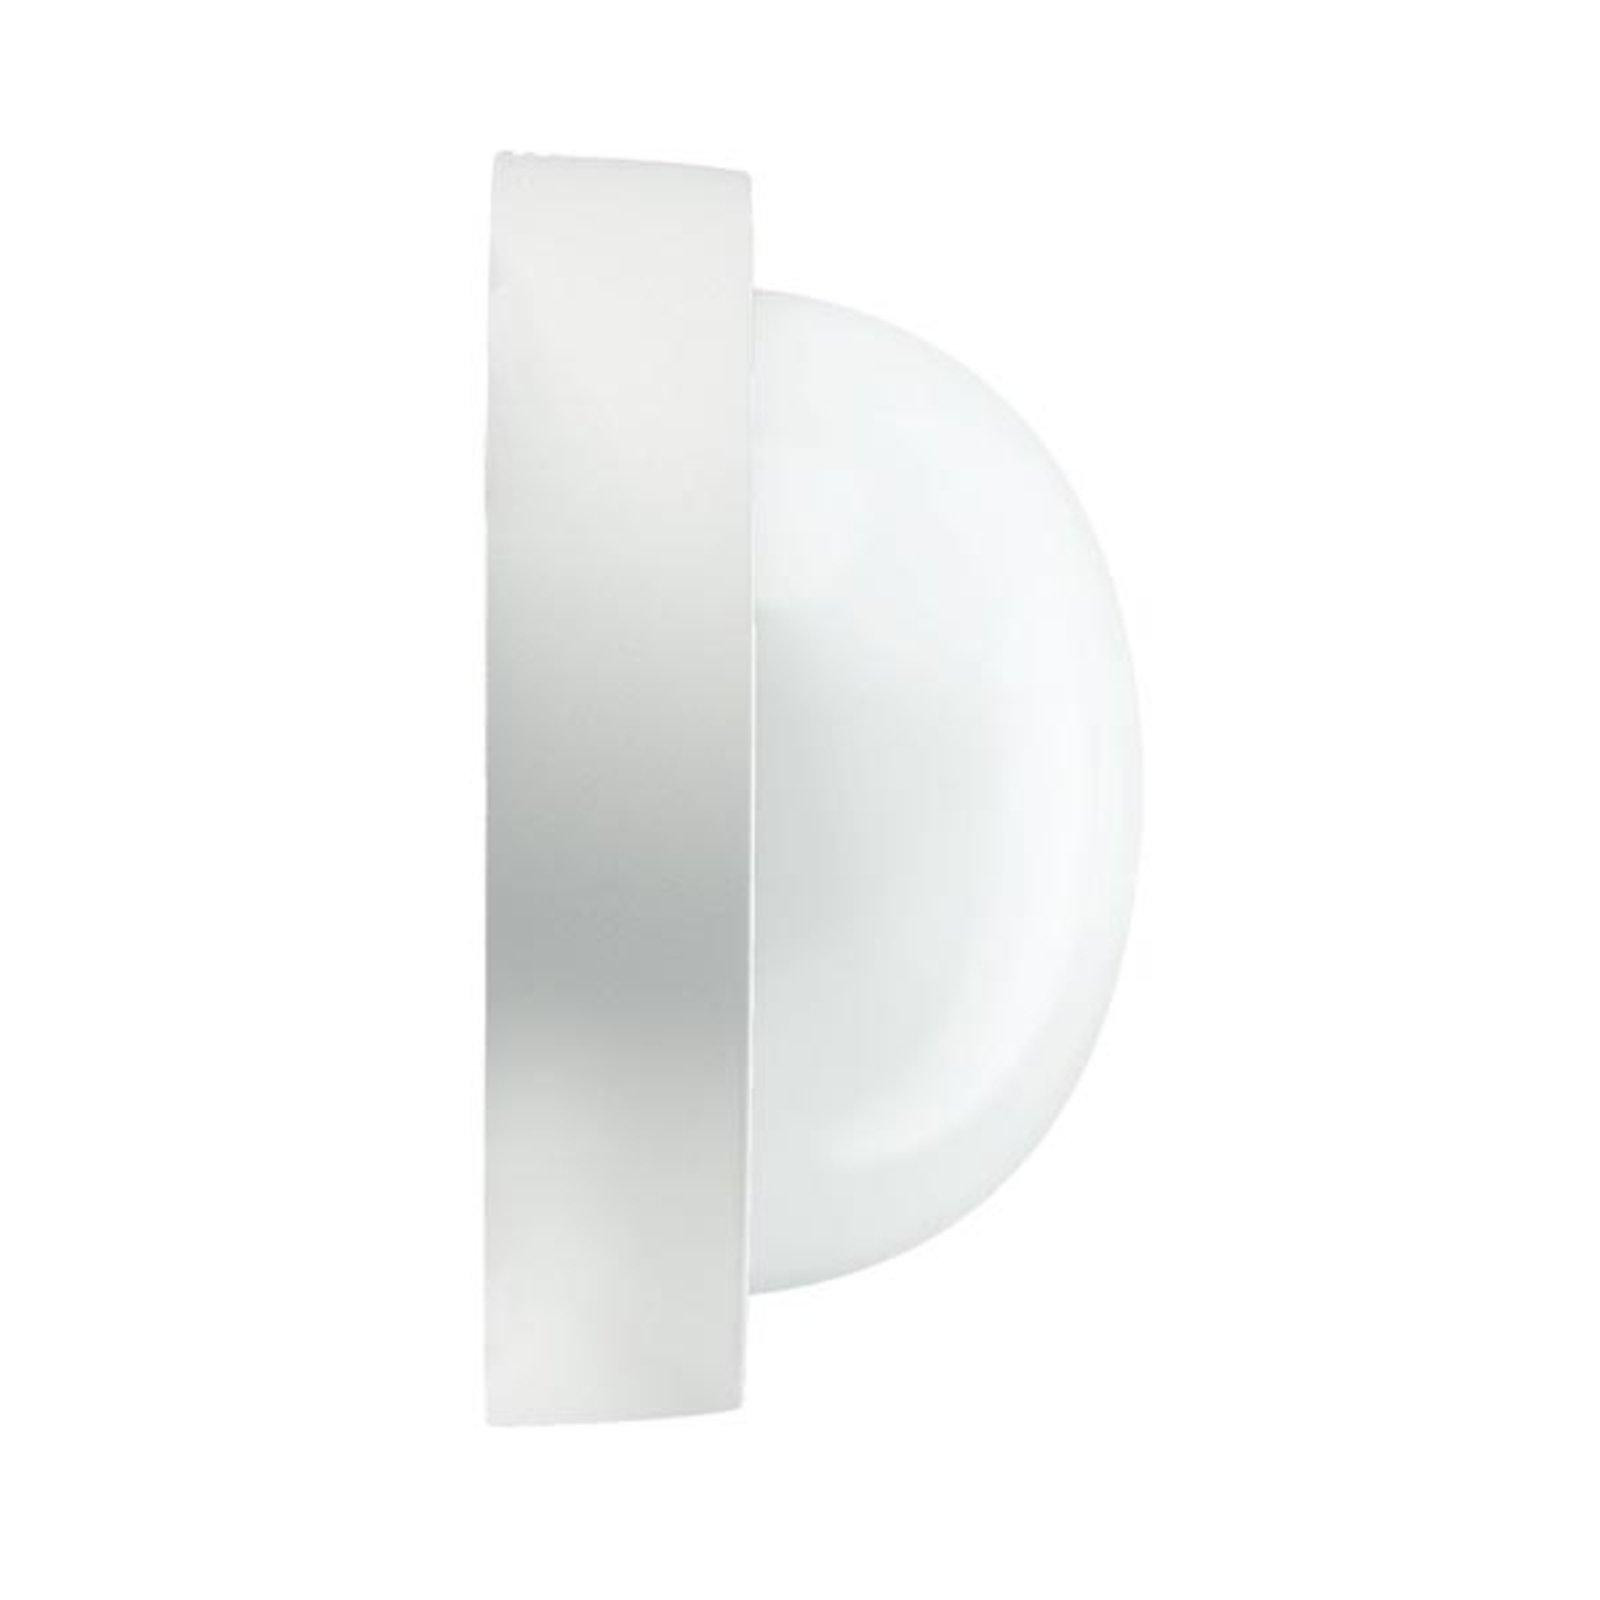 EKO 21 udendørs væg- eller loftlampe i hvid